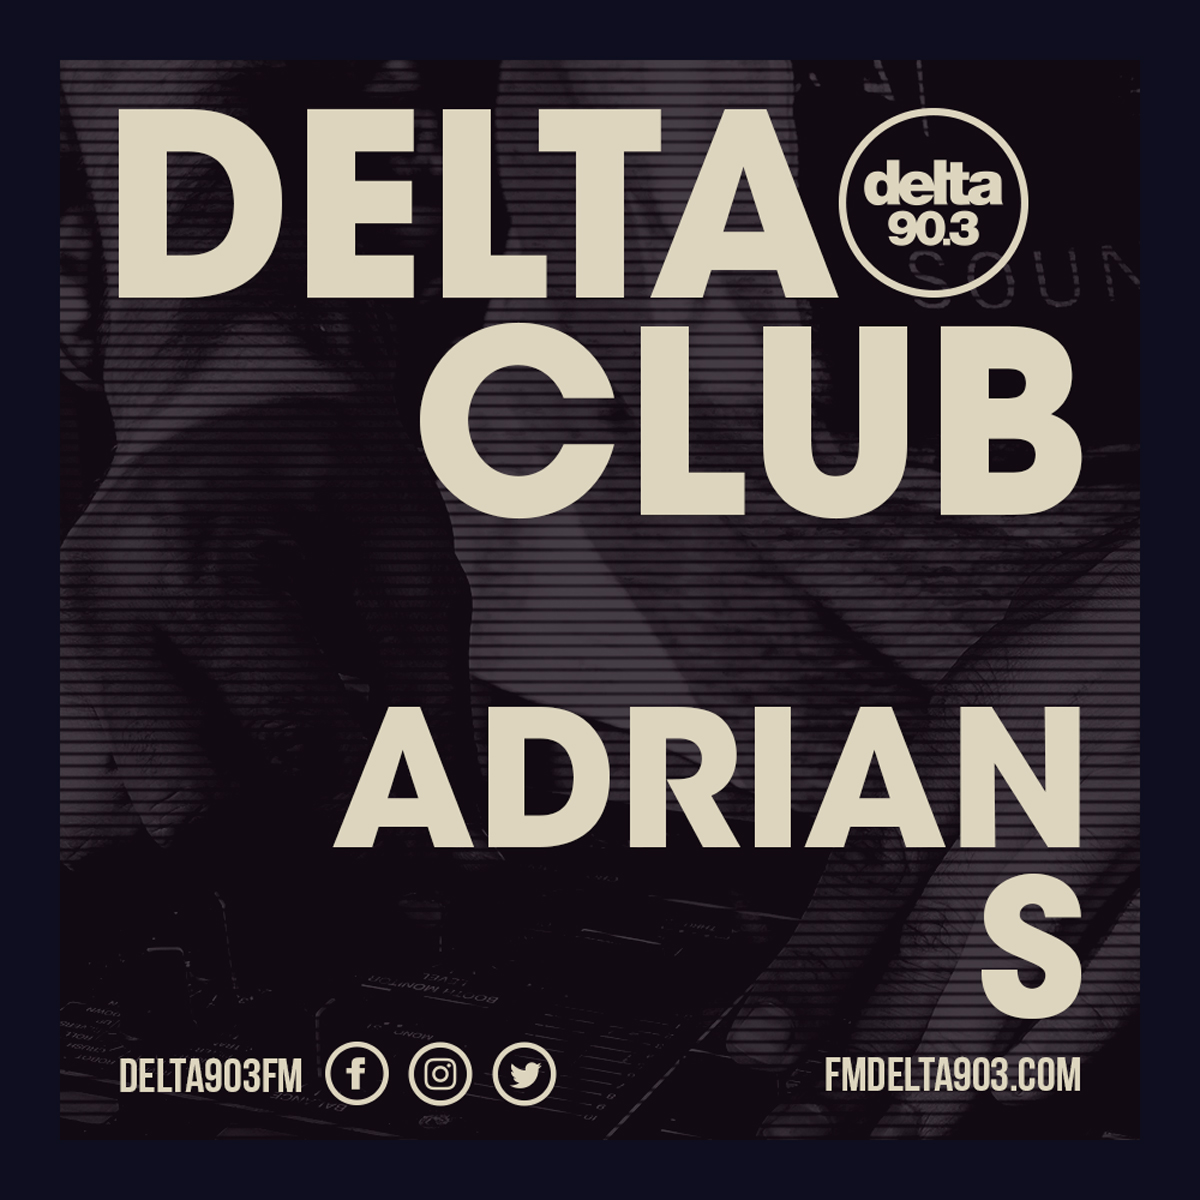 Delta Podcasts - Delta Club presents Adrian S (02.07.2018)